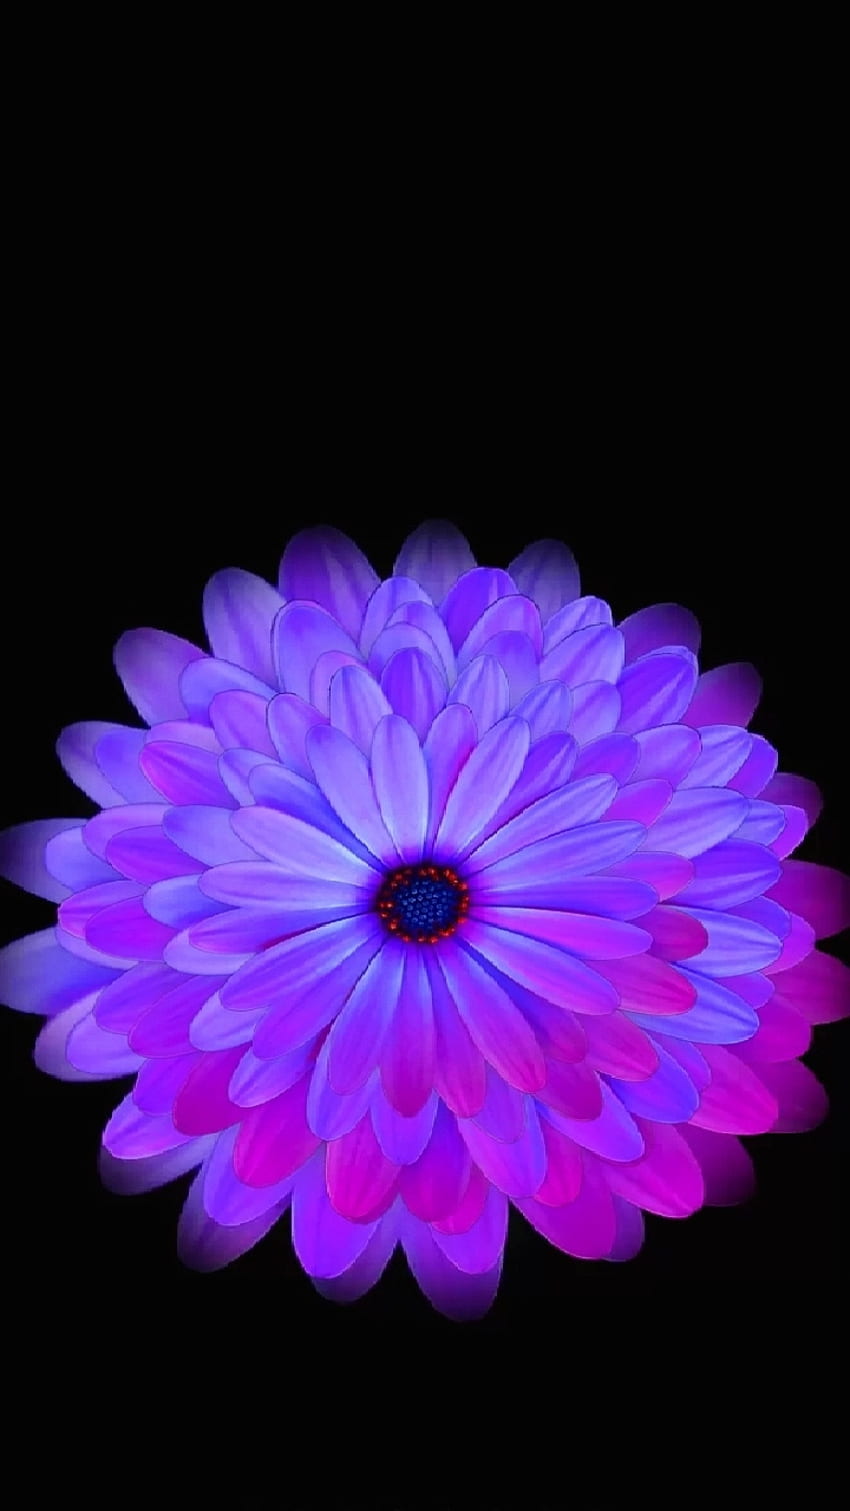 Hãy đem màu tím thật hay ho vào chiếc điện thoại của bạn với hình nền HD hoa tím này. Không chỉ đẹp mắt và sống động, đây còn là một lựa chọn hoàn hảo để tạo nên phong cách của riêng bạn.